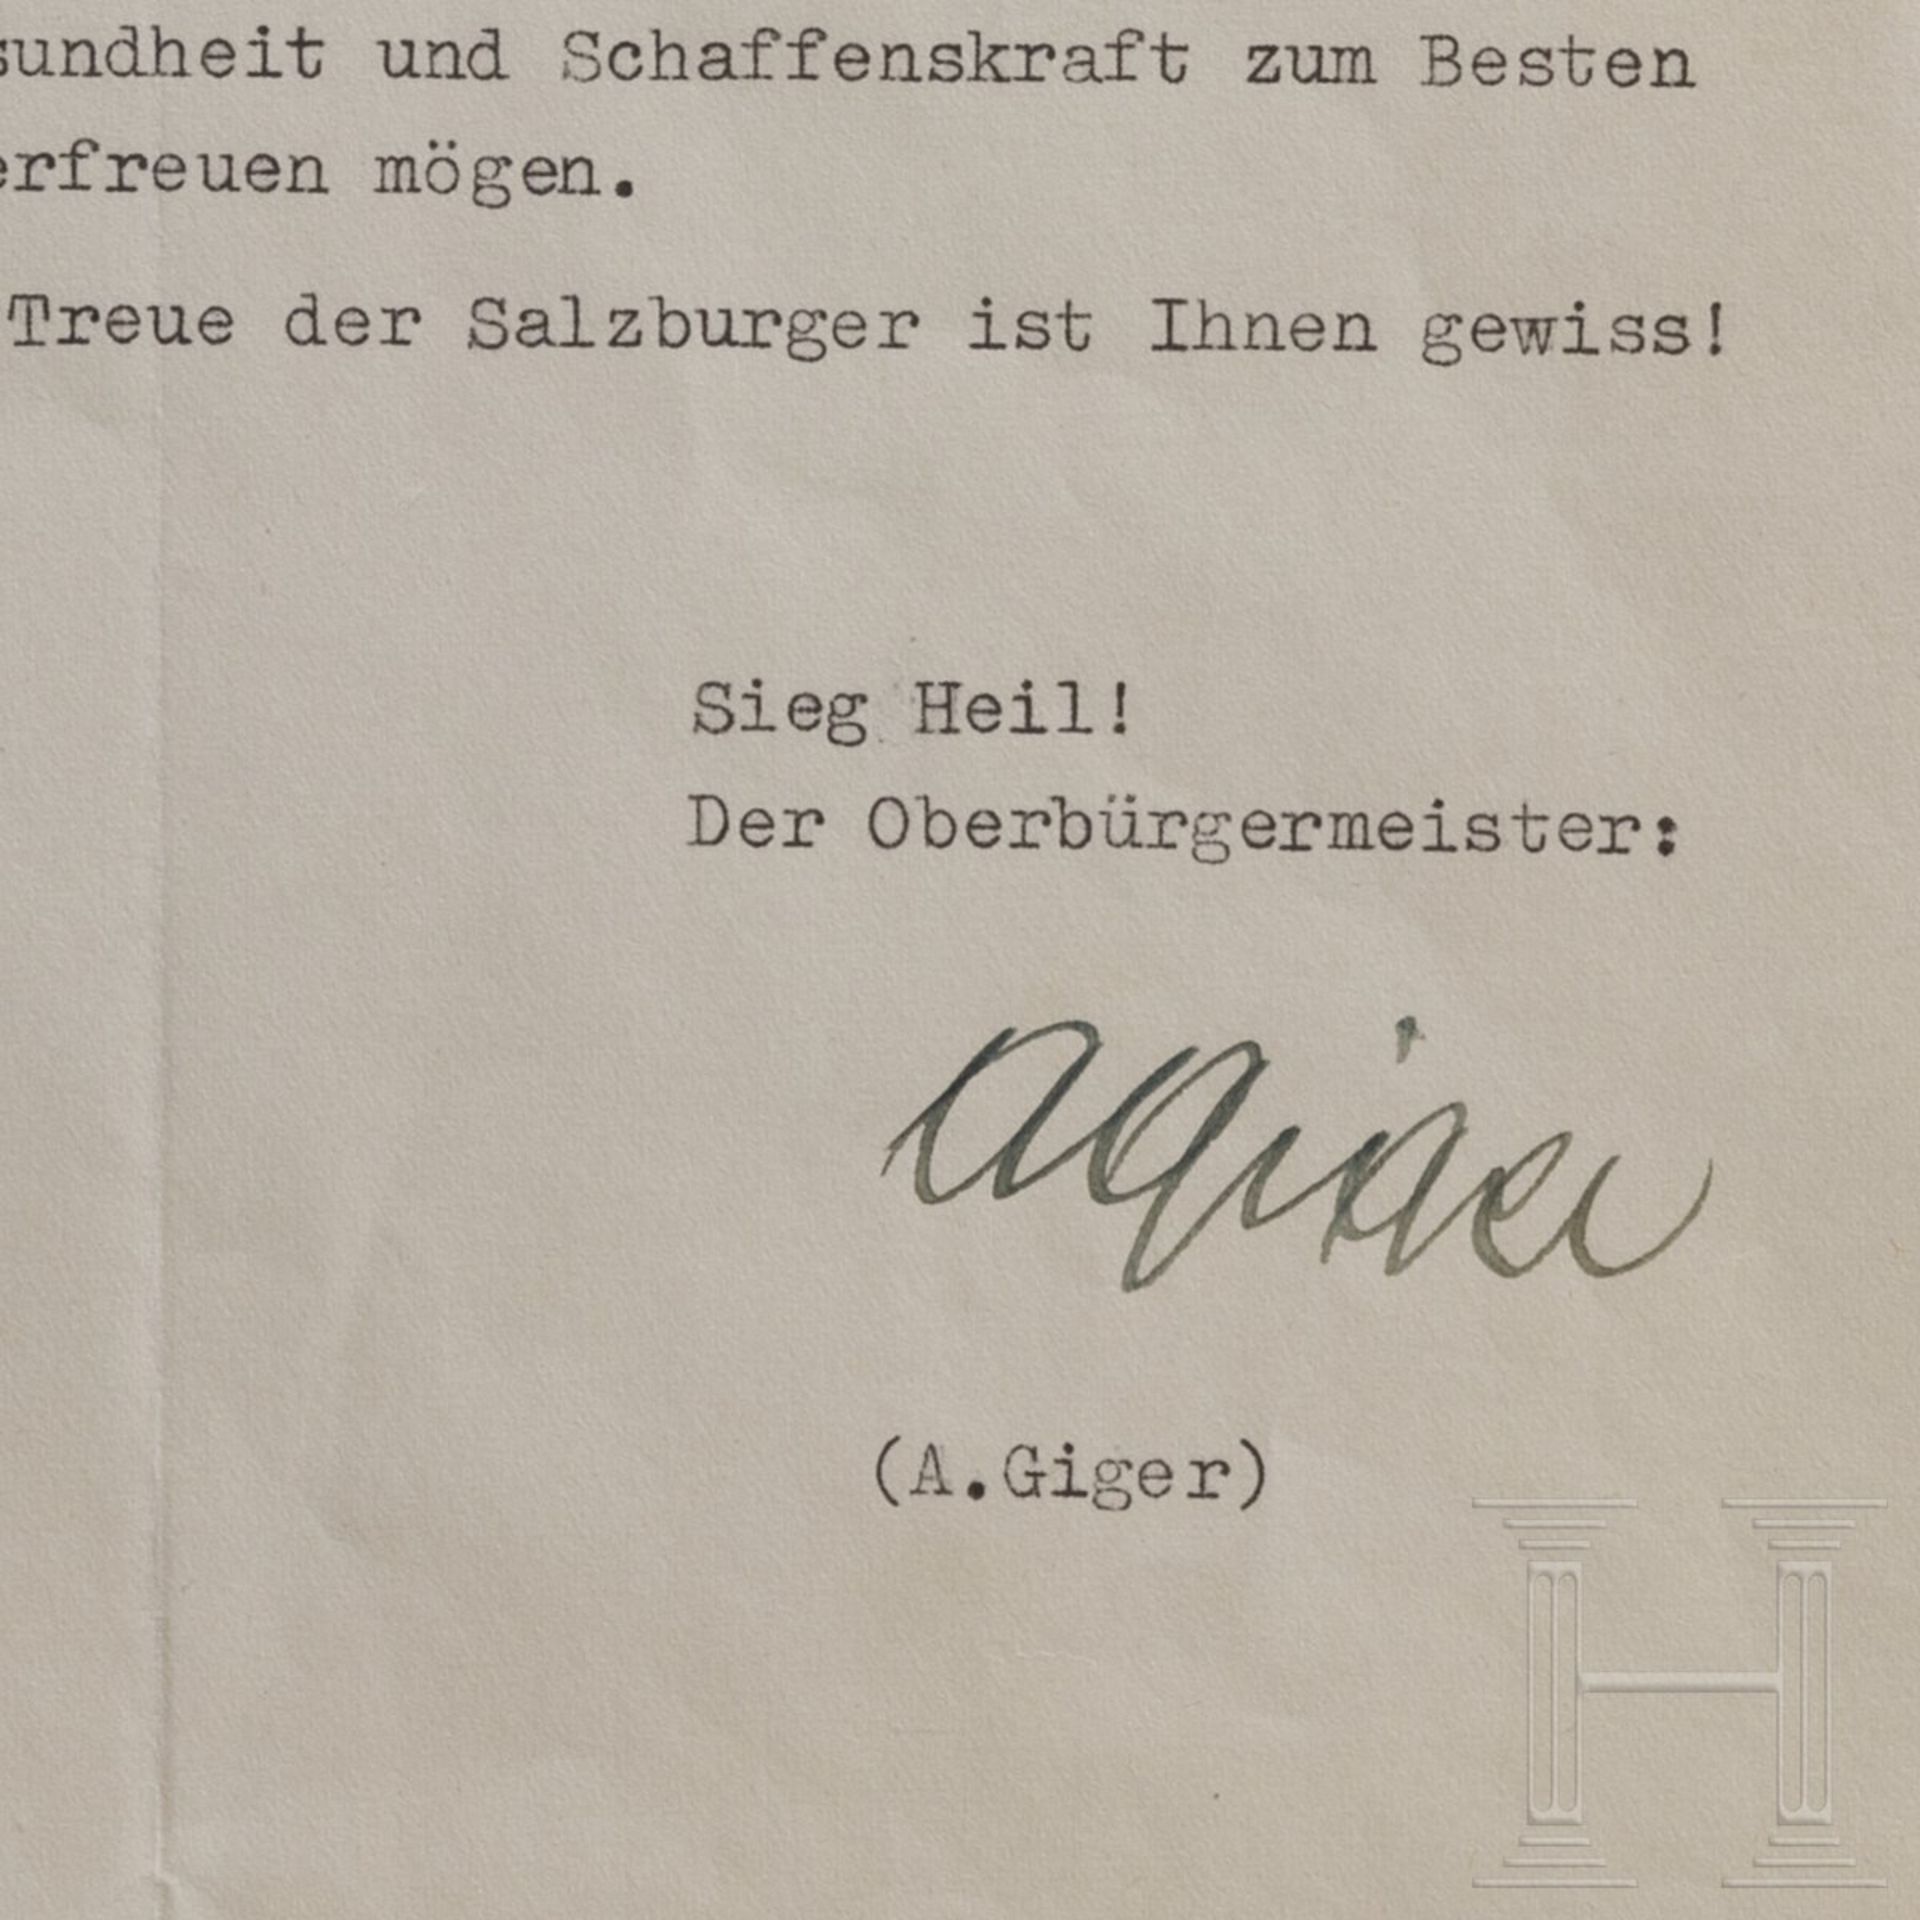 Anton Giger (1885 - 1945) - signiertes Glückwunschschreiben des Salzburger Oberbürgermeisters zum Ja - Bild 2 aus 2